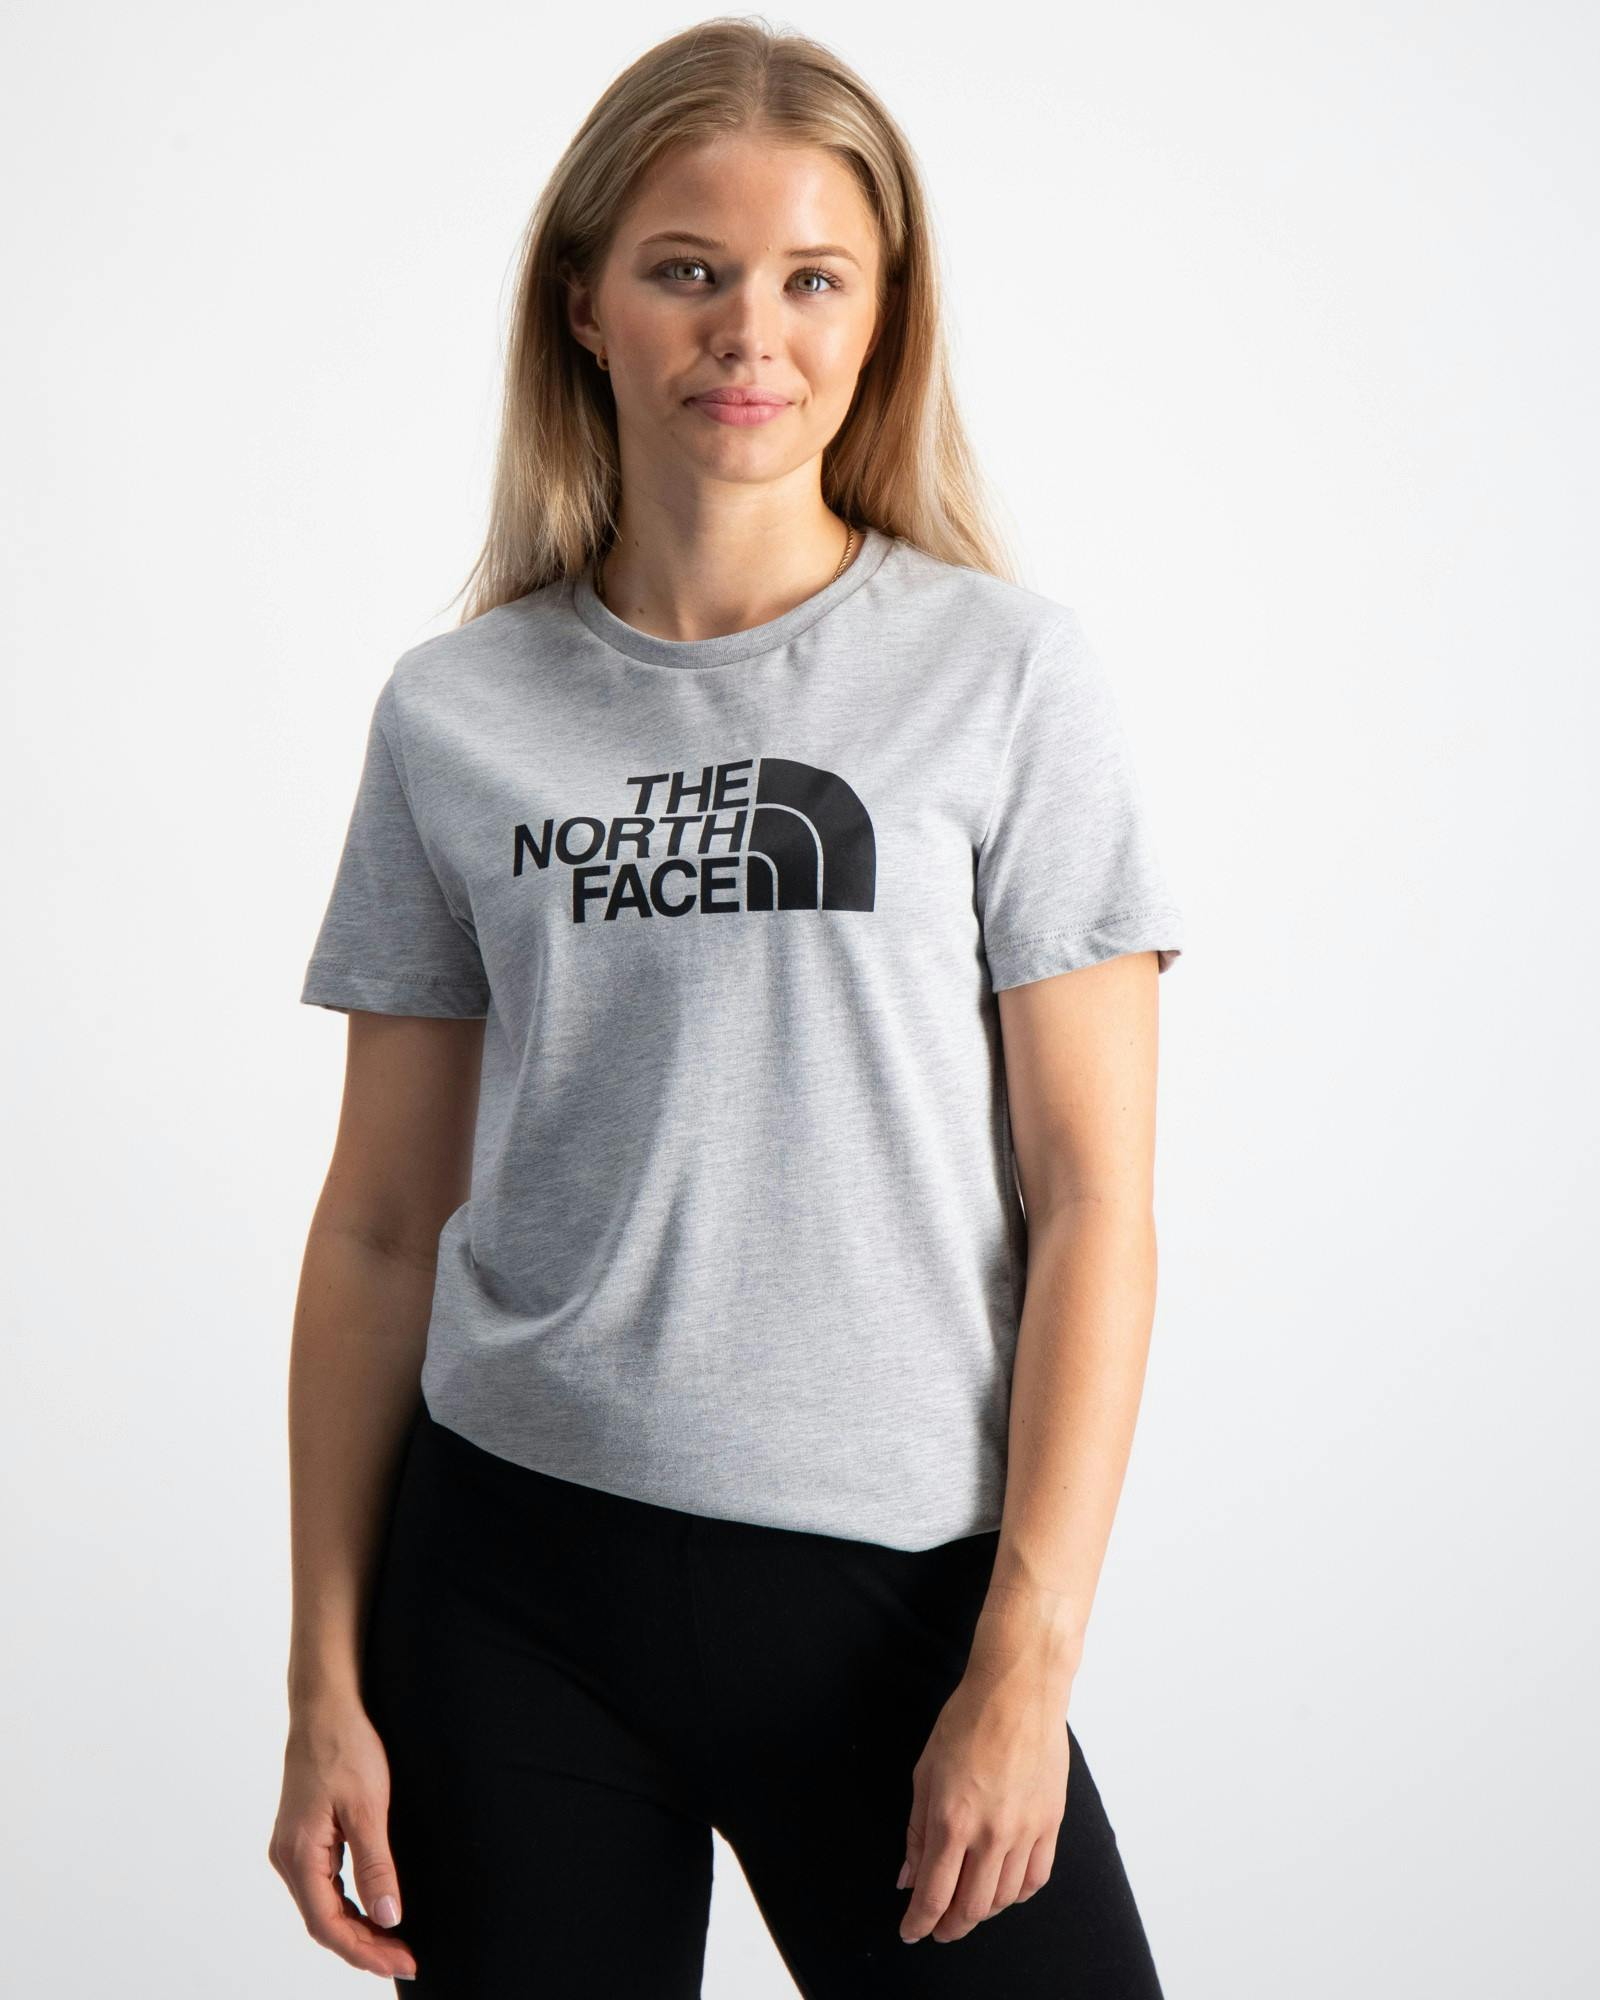 The North Face T-Shirts für Kinder und Jugendliche | Kids Brand Store